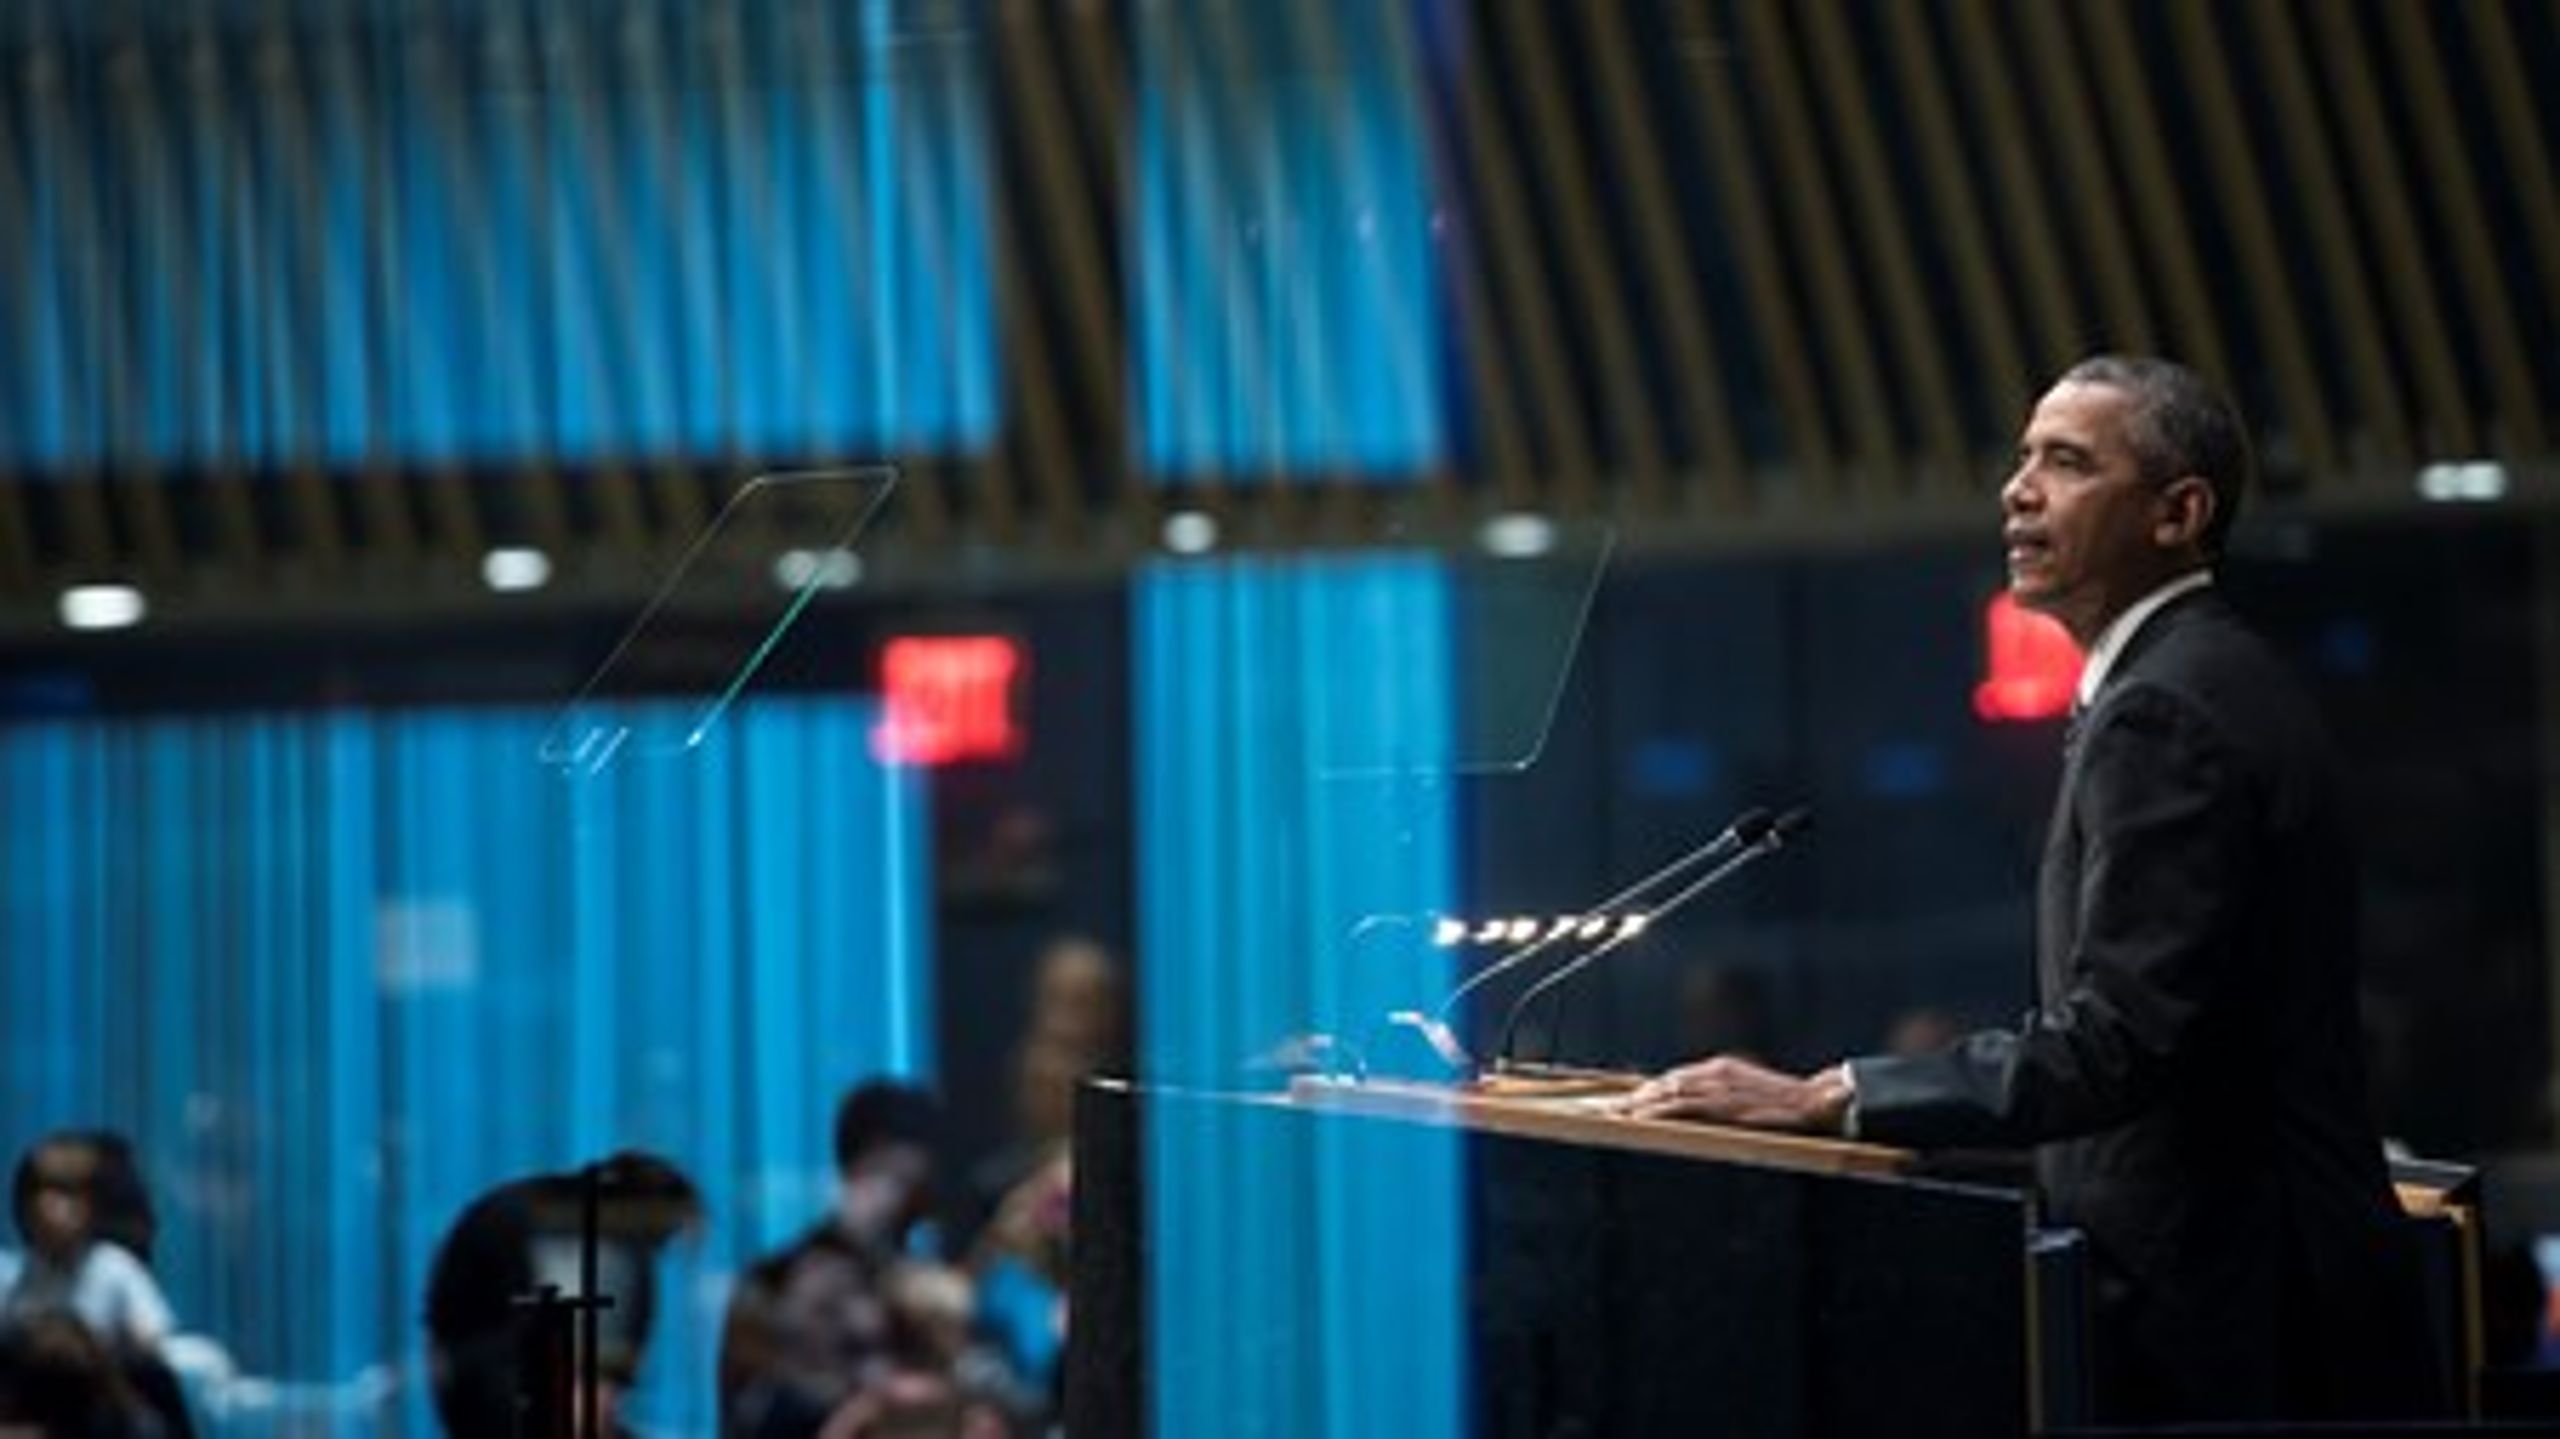 Søndag den 27. september 2016&nbsp;holdt præsident, Barack Obama, tale om FN's nye mål frem mod 2030. Mandag handler det om nutiden og krigen i Syrien, som han skal diskutere med præsident Vladimir&nbsp;Putin.&nbsp;